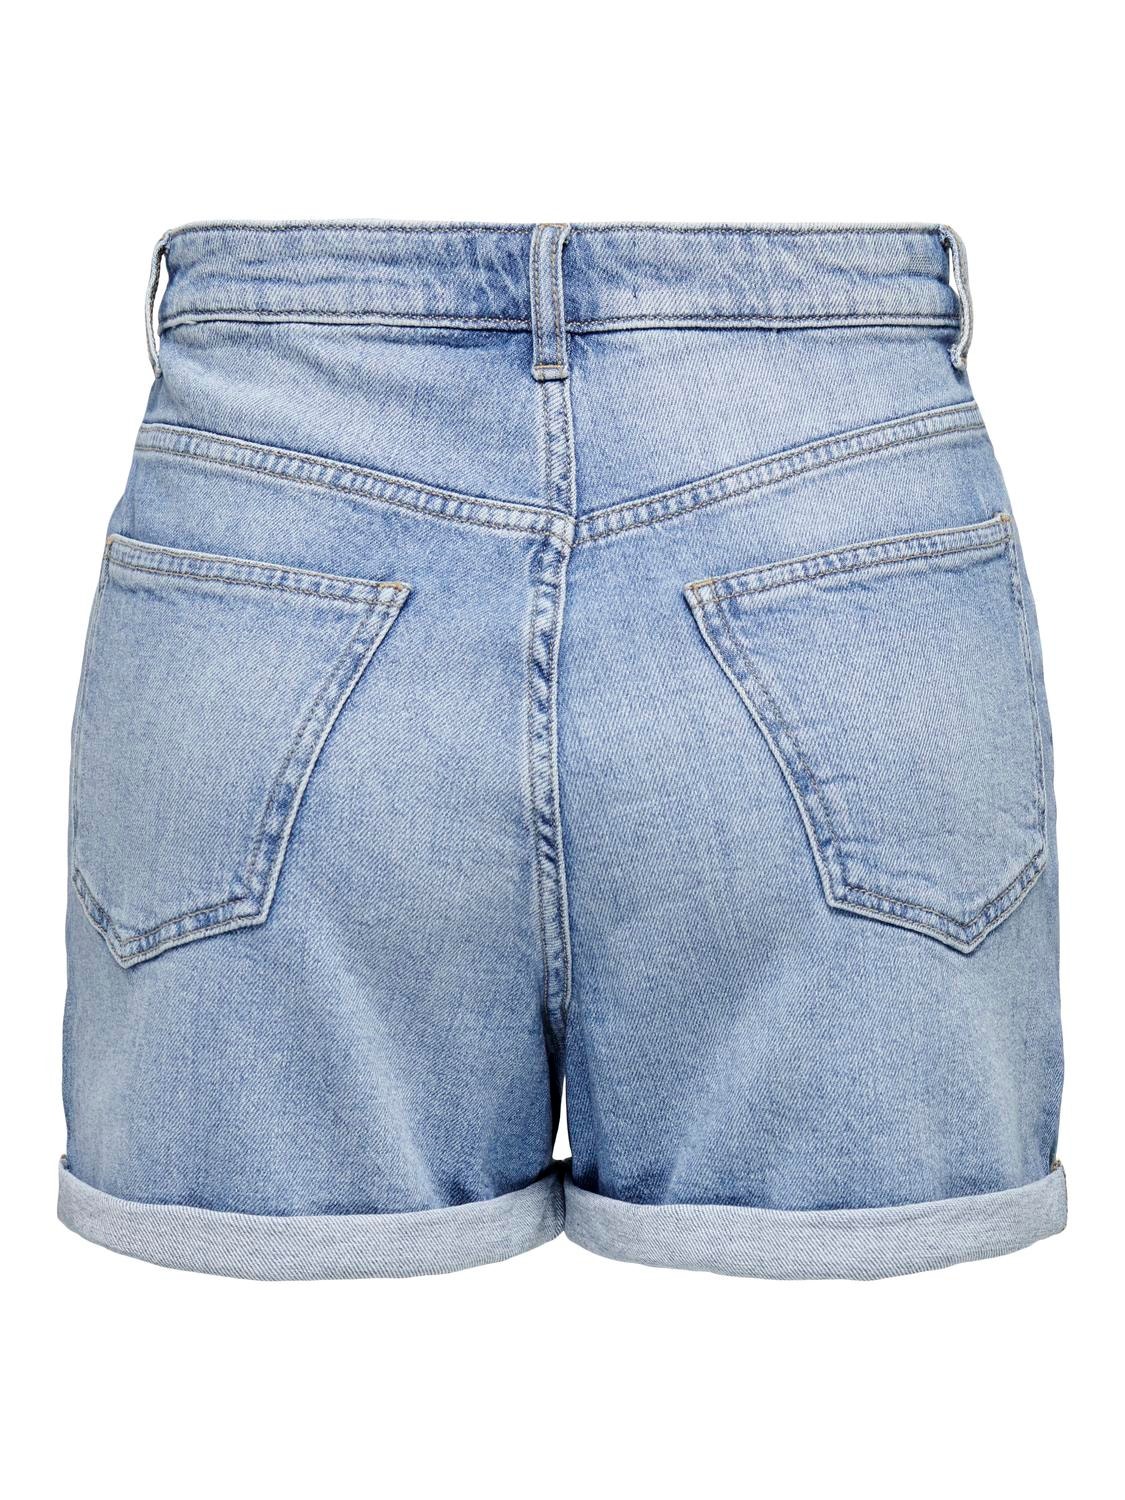 ONLY Regular Fit Oppbrettskanter Shorts -Light Blue Denim - 15321381